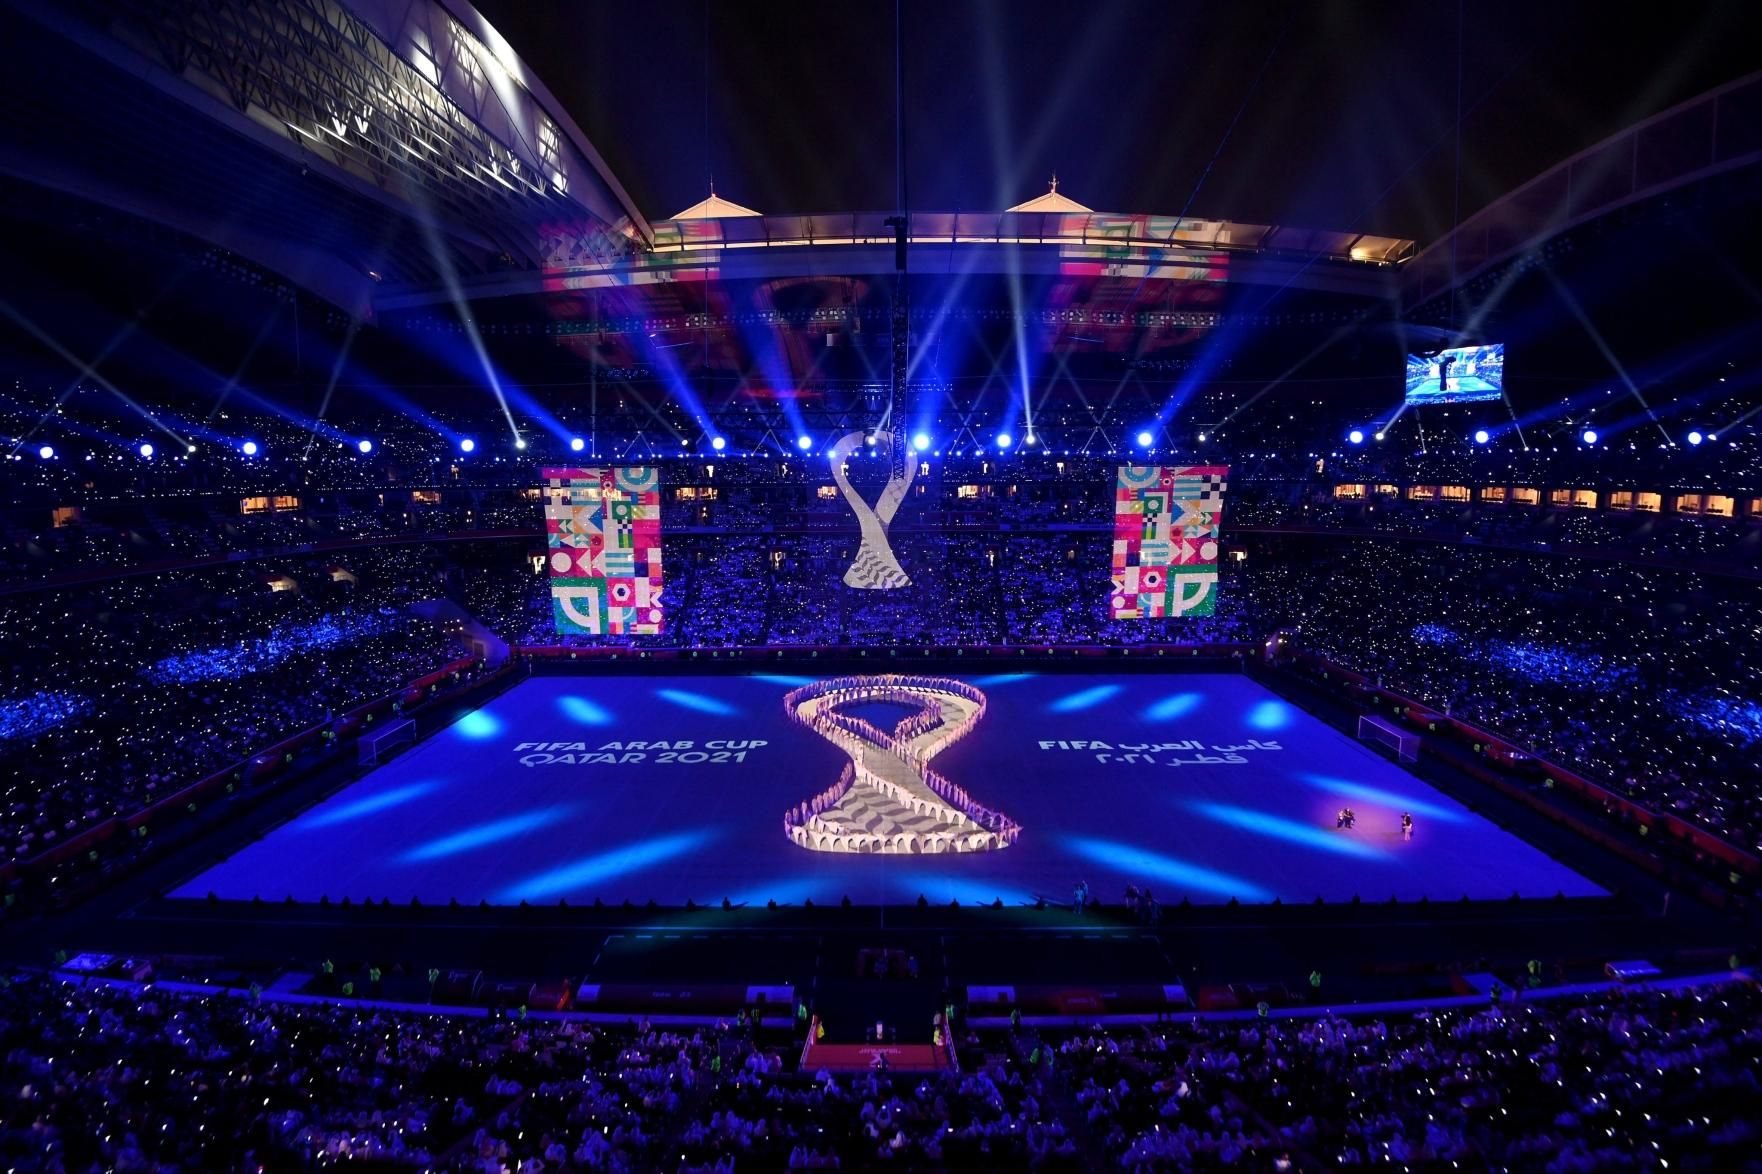 Catar 2022: Fatos e números de uma Copa do Mundo artificial, final